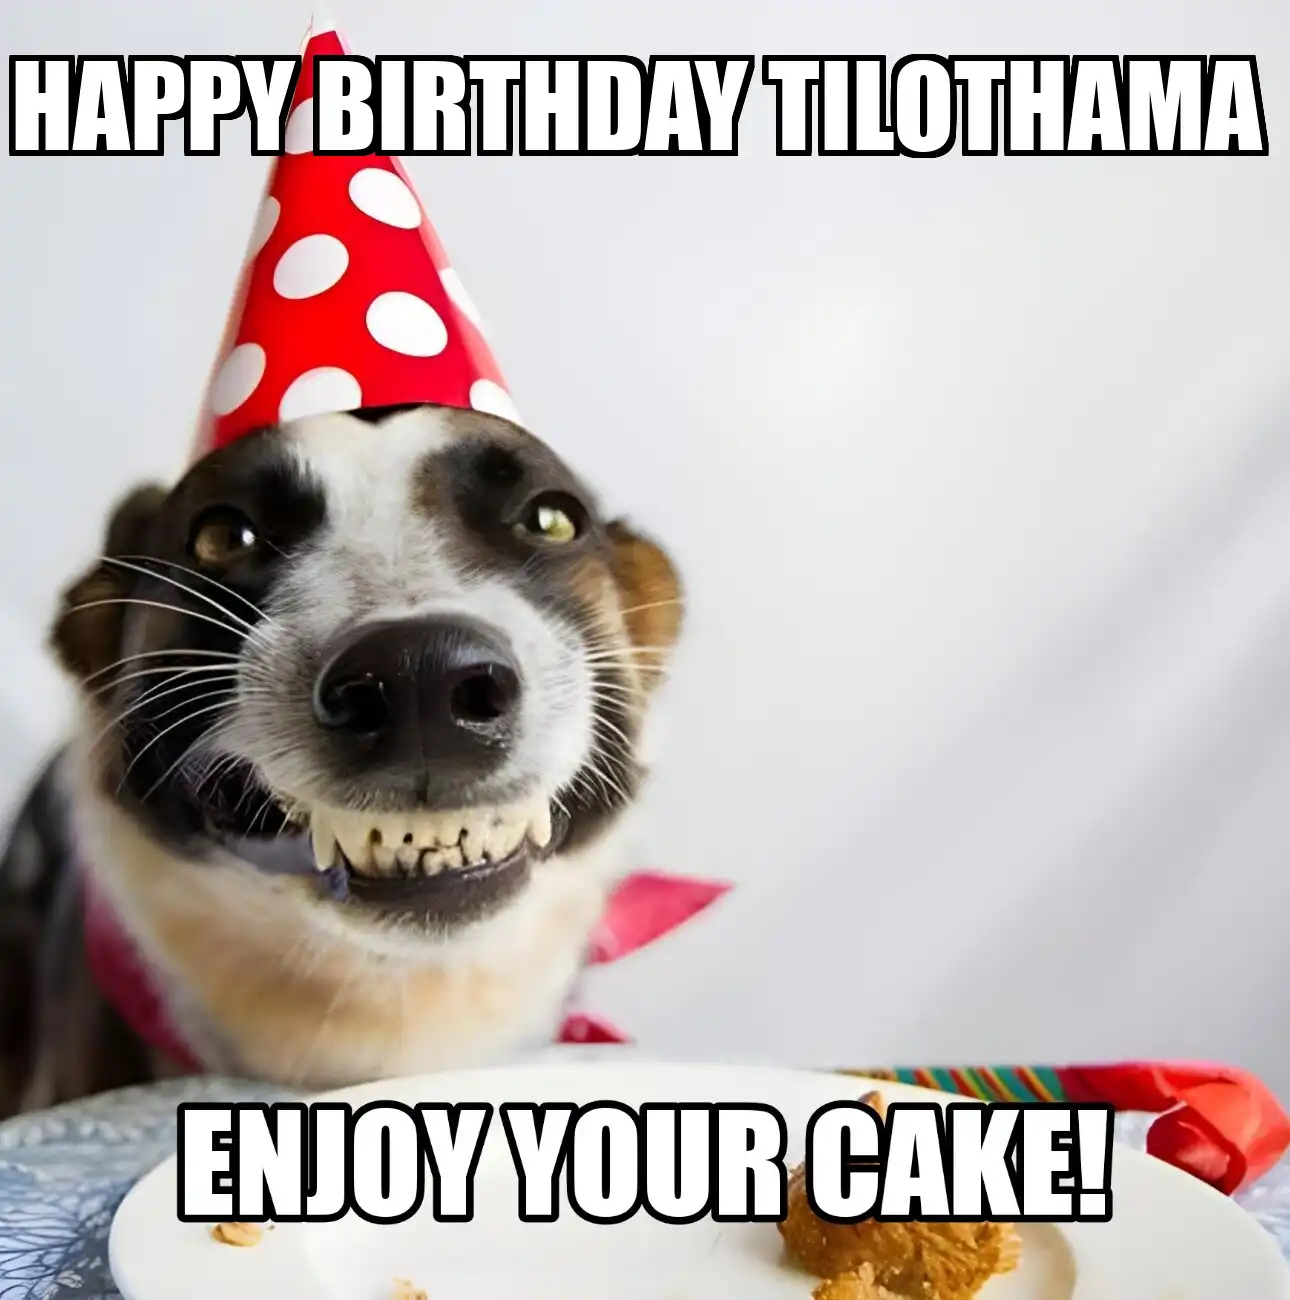 Happy Birthday Tilothama Enjoy Your Cake Dog Meme